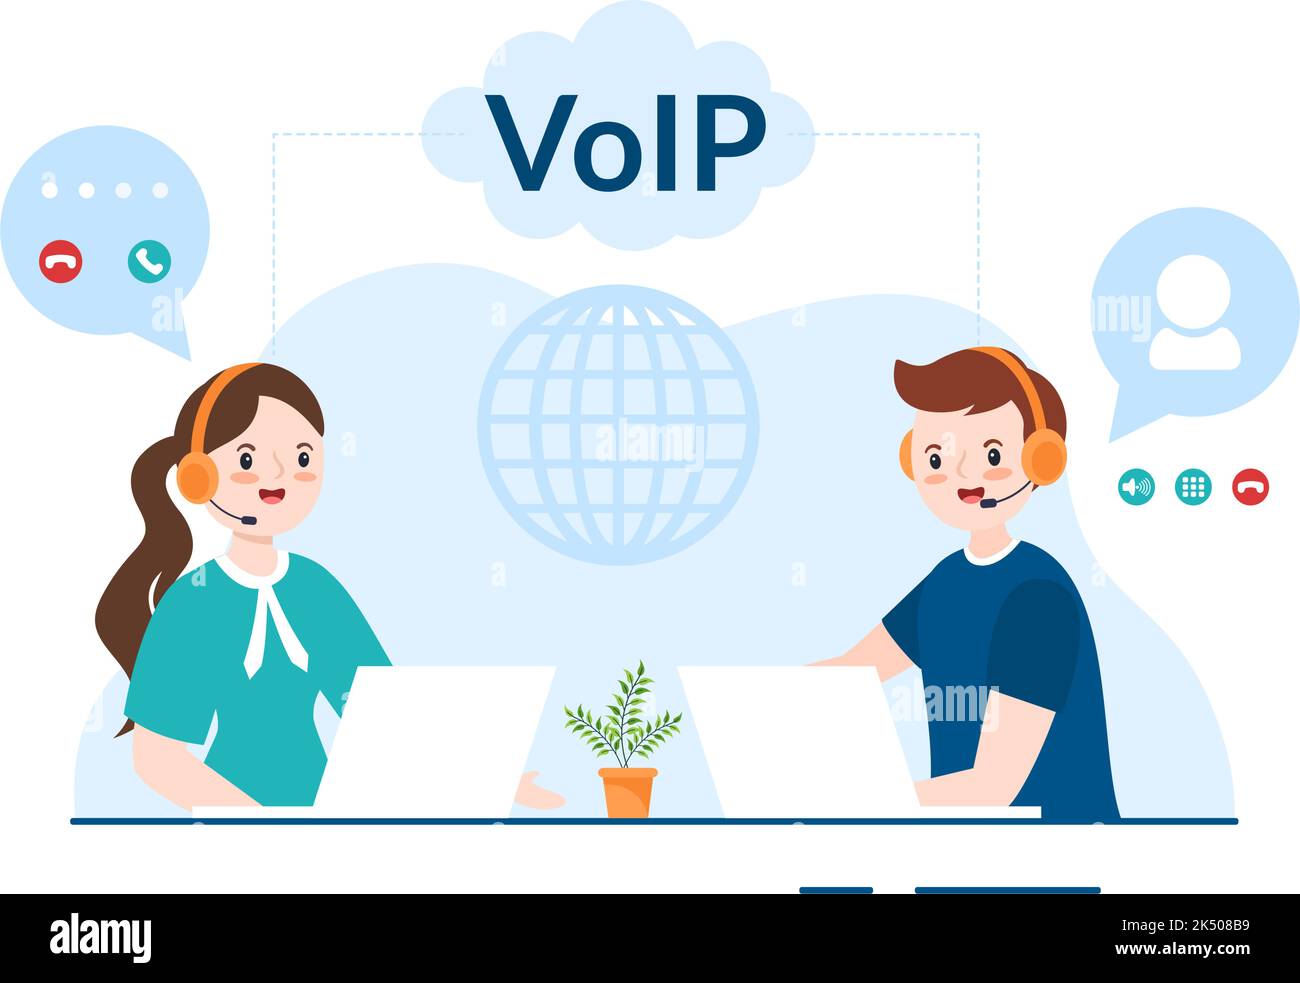 VOIP ou Voice over Internet Protocol avec technologie de schéma de téléphonie et logiciel d'appel de téléphone réseau dans le modèle dessin main dessin dessin dessin de dessin animé Illustration de Vecteur